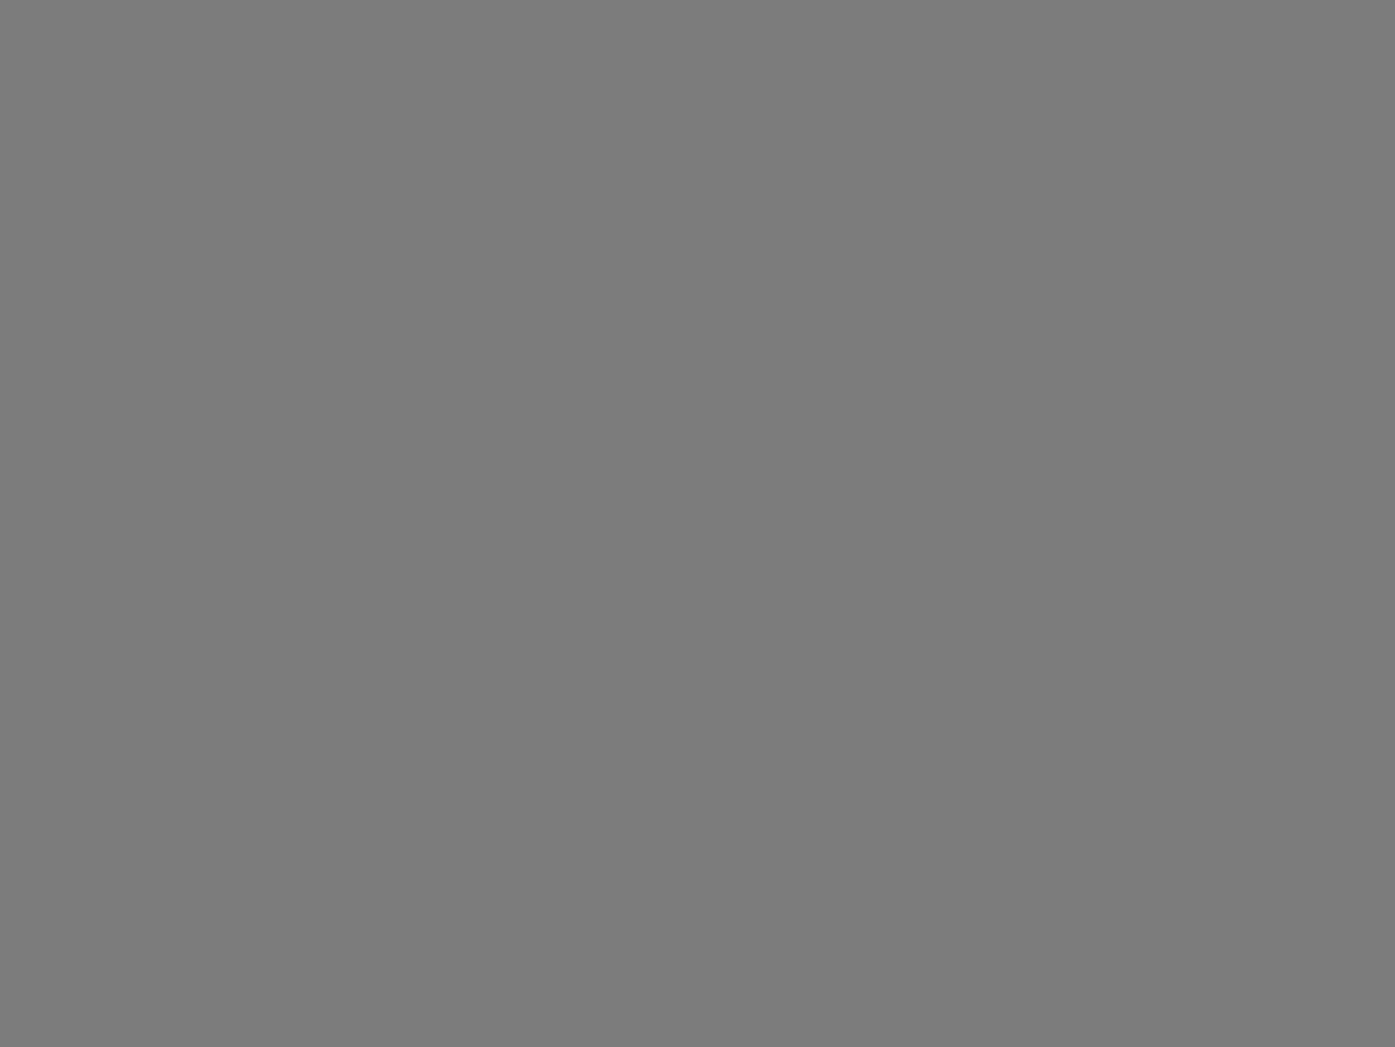 Слева направо: Леонид Куравлев в роли Пашки Колокольникова, режиссер Василий Шукшин и Белла Ахмадулина в роли журналистки на съемках художественного фильма Василия Шукшина «Живет такой парень». 1963 год. Фотография: Государственный музей истории литературы, искусства и культуры Алтая, Барнаул